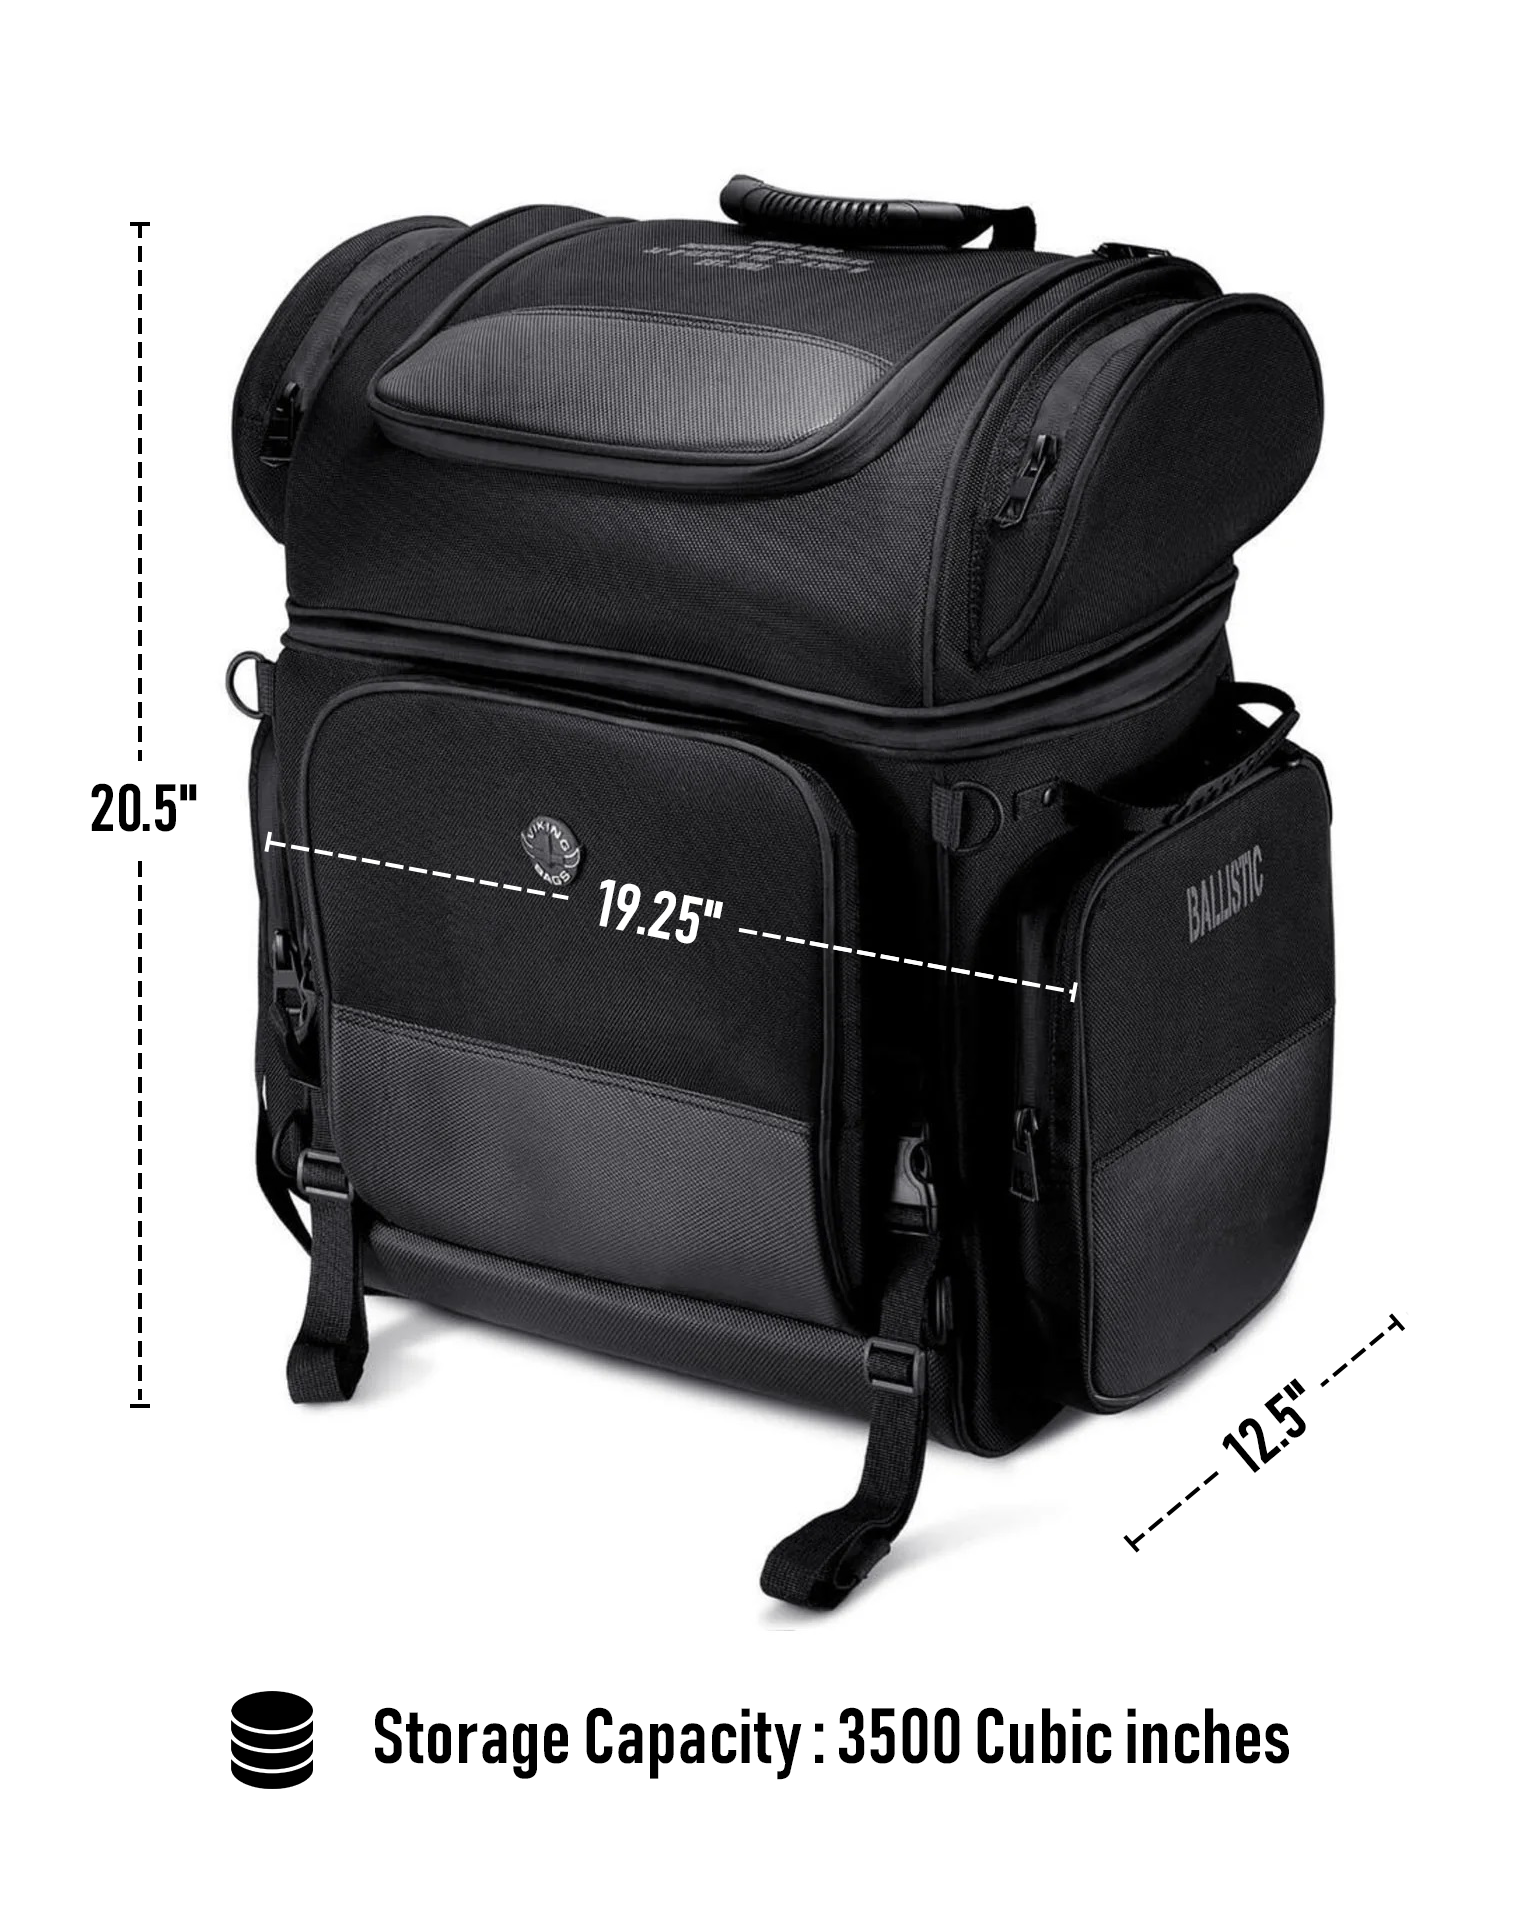 57L - Voyage Premium XL Suzuki Motorcycle Tail Bag